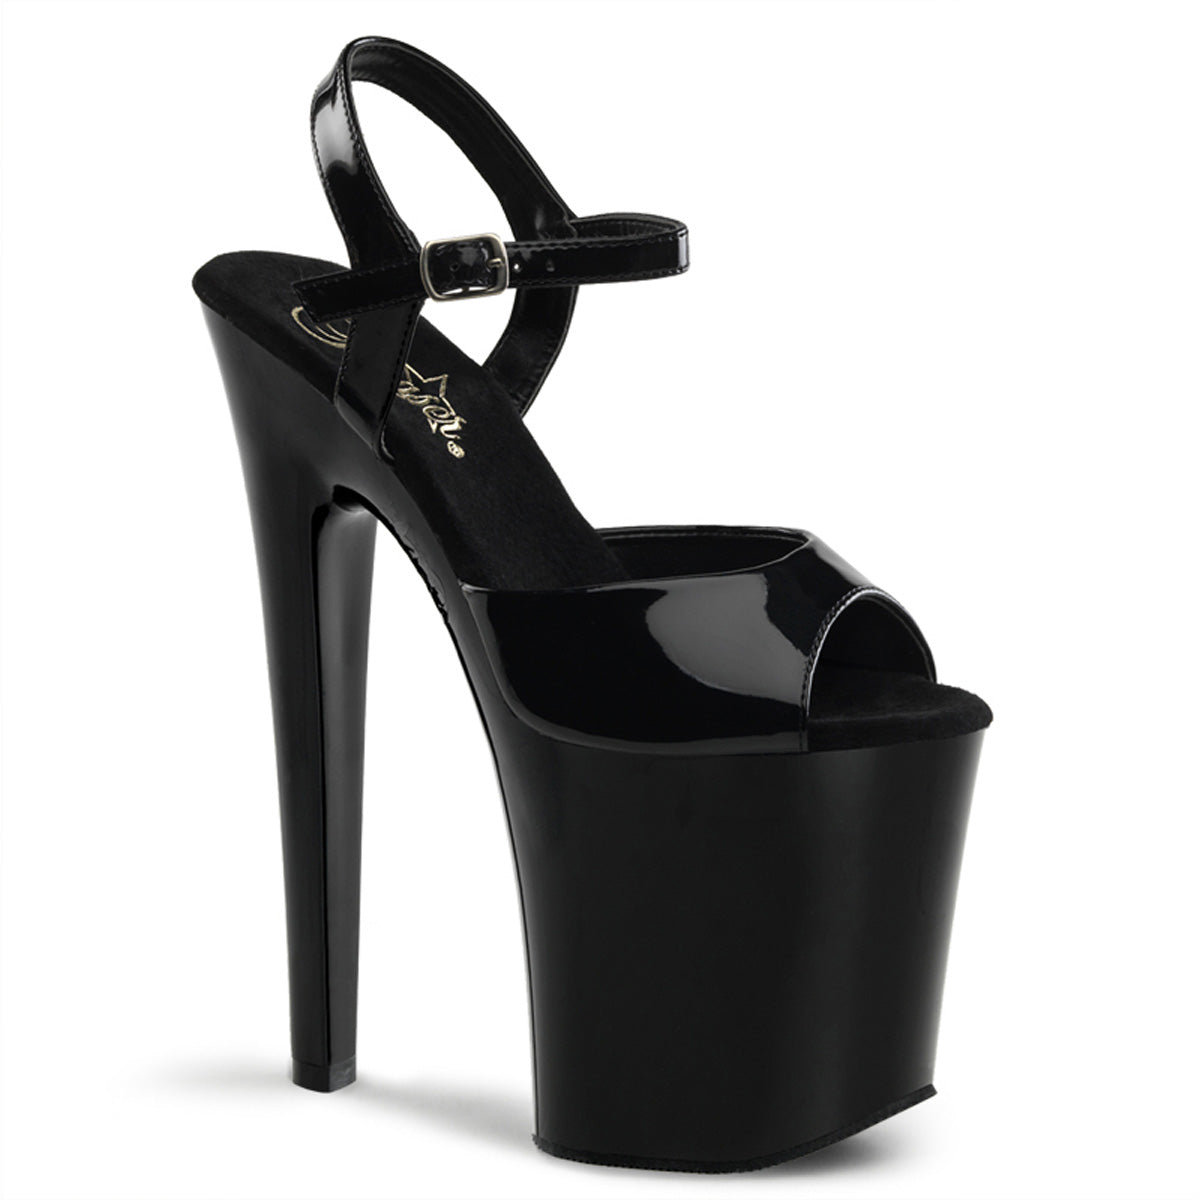 XTREME-809 8" Heel Black Patent Pole Dancer Platform Shoes Shoes